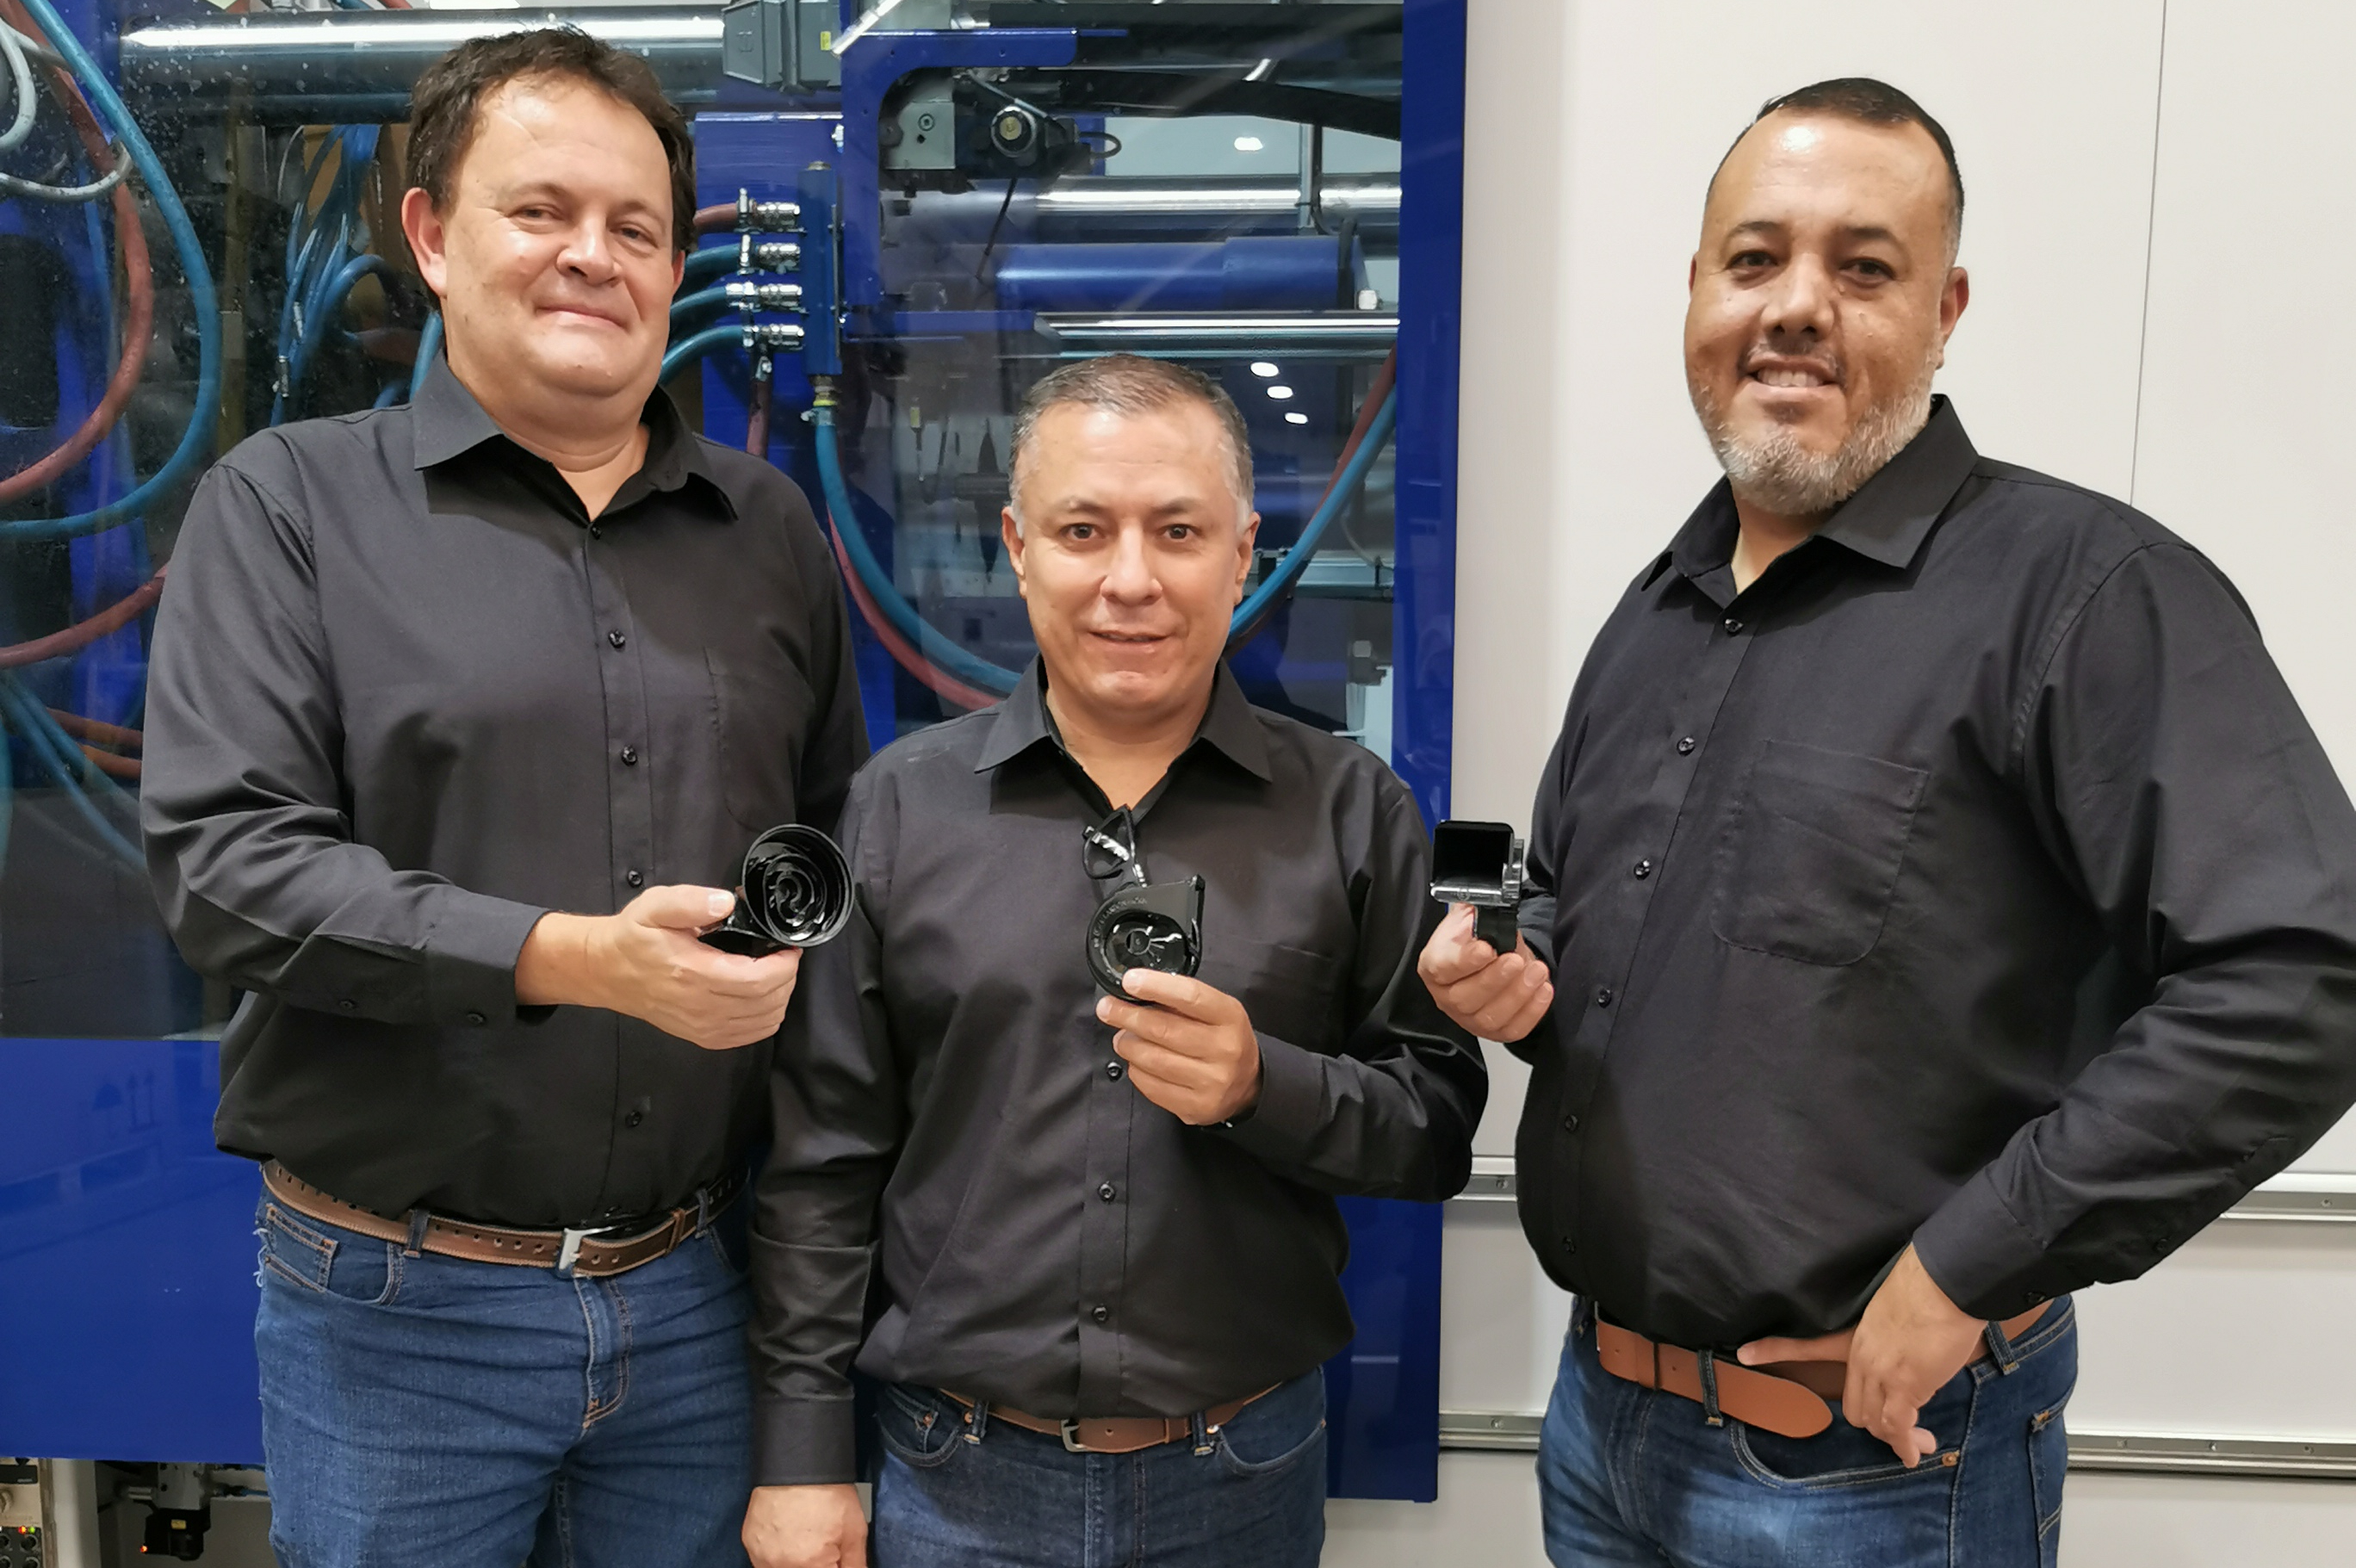 Rompa Group fabrica, en su planta de Querétaro, México, autopartes y piezas técnicas.